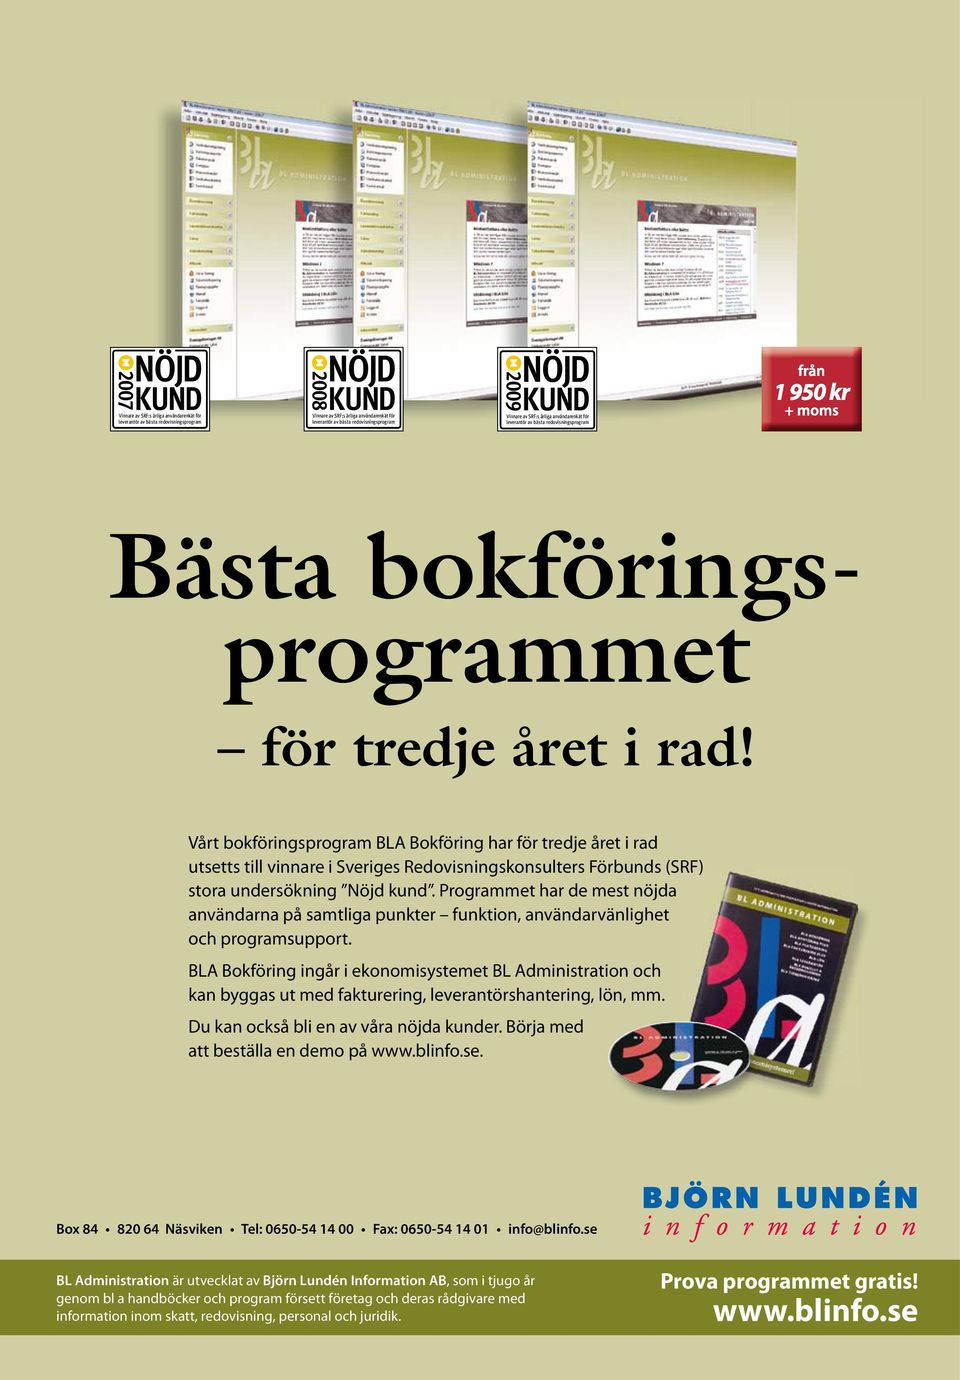 Vårt bokföringsprogram BLA Bokföring har för tredje året i rad utsetts till vinnare i Sveriges Redovisningskonsulters Förbunds (SRF) stora undersökning Nöjd kund.